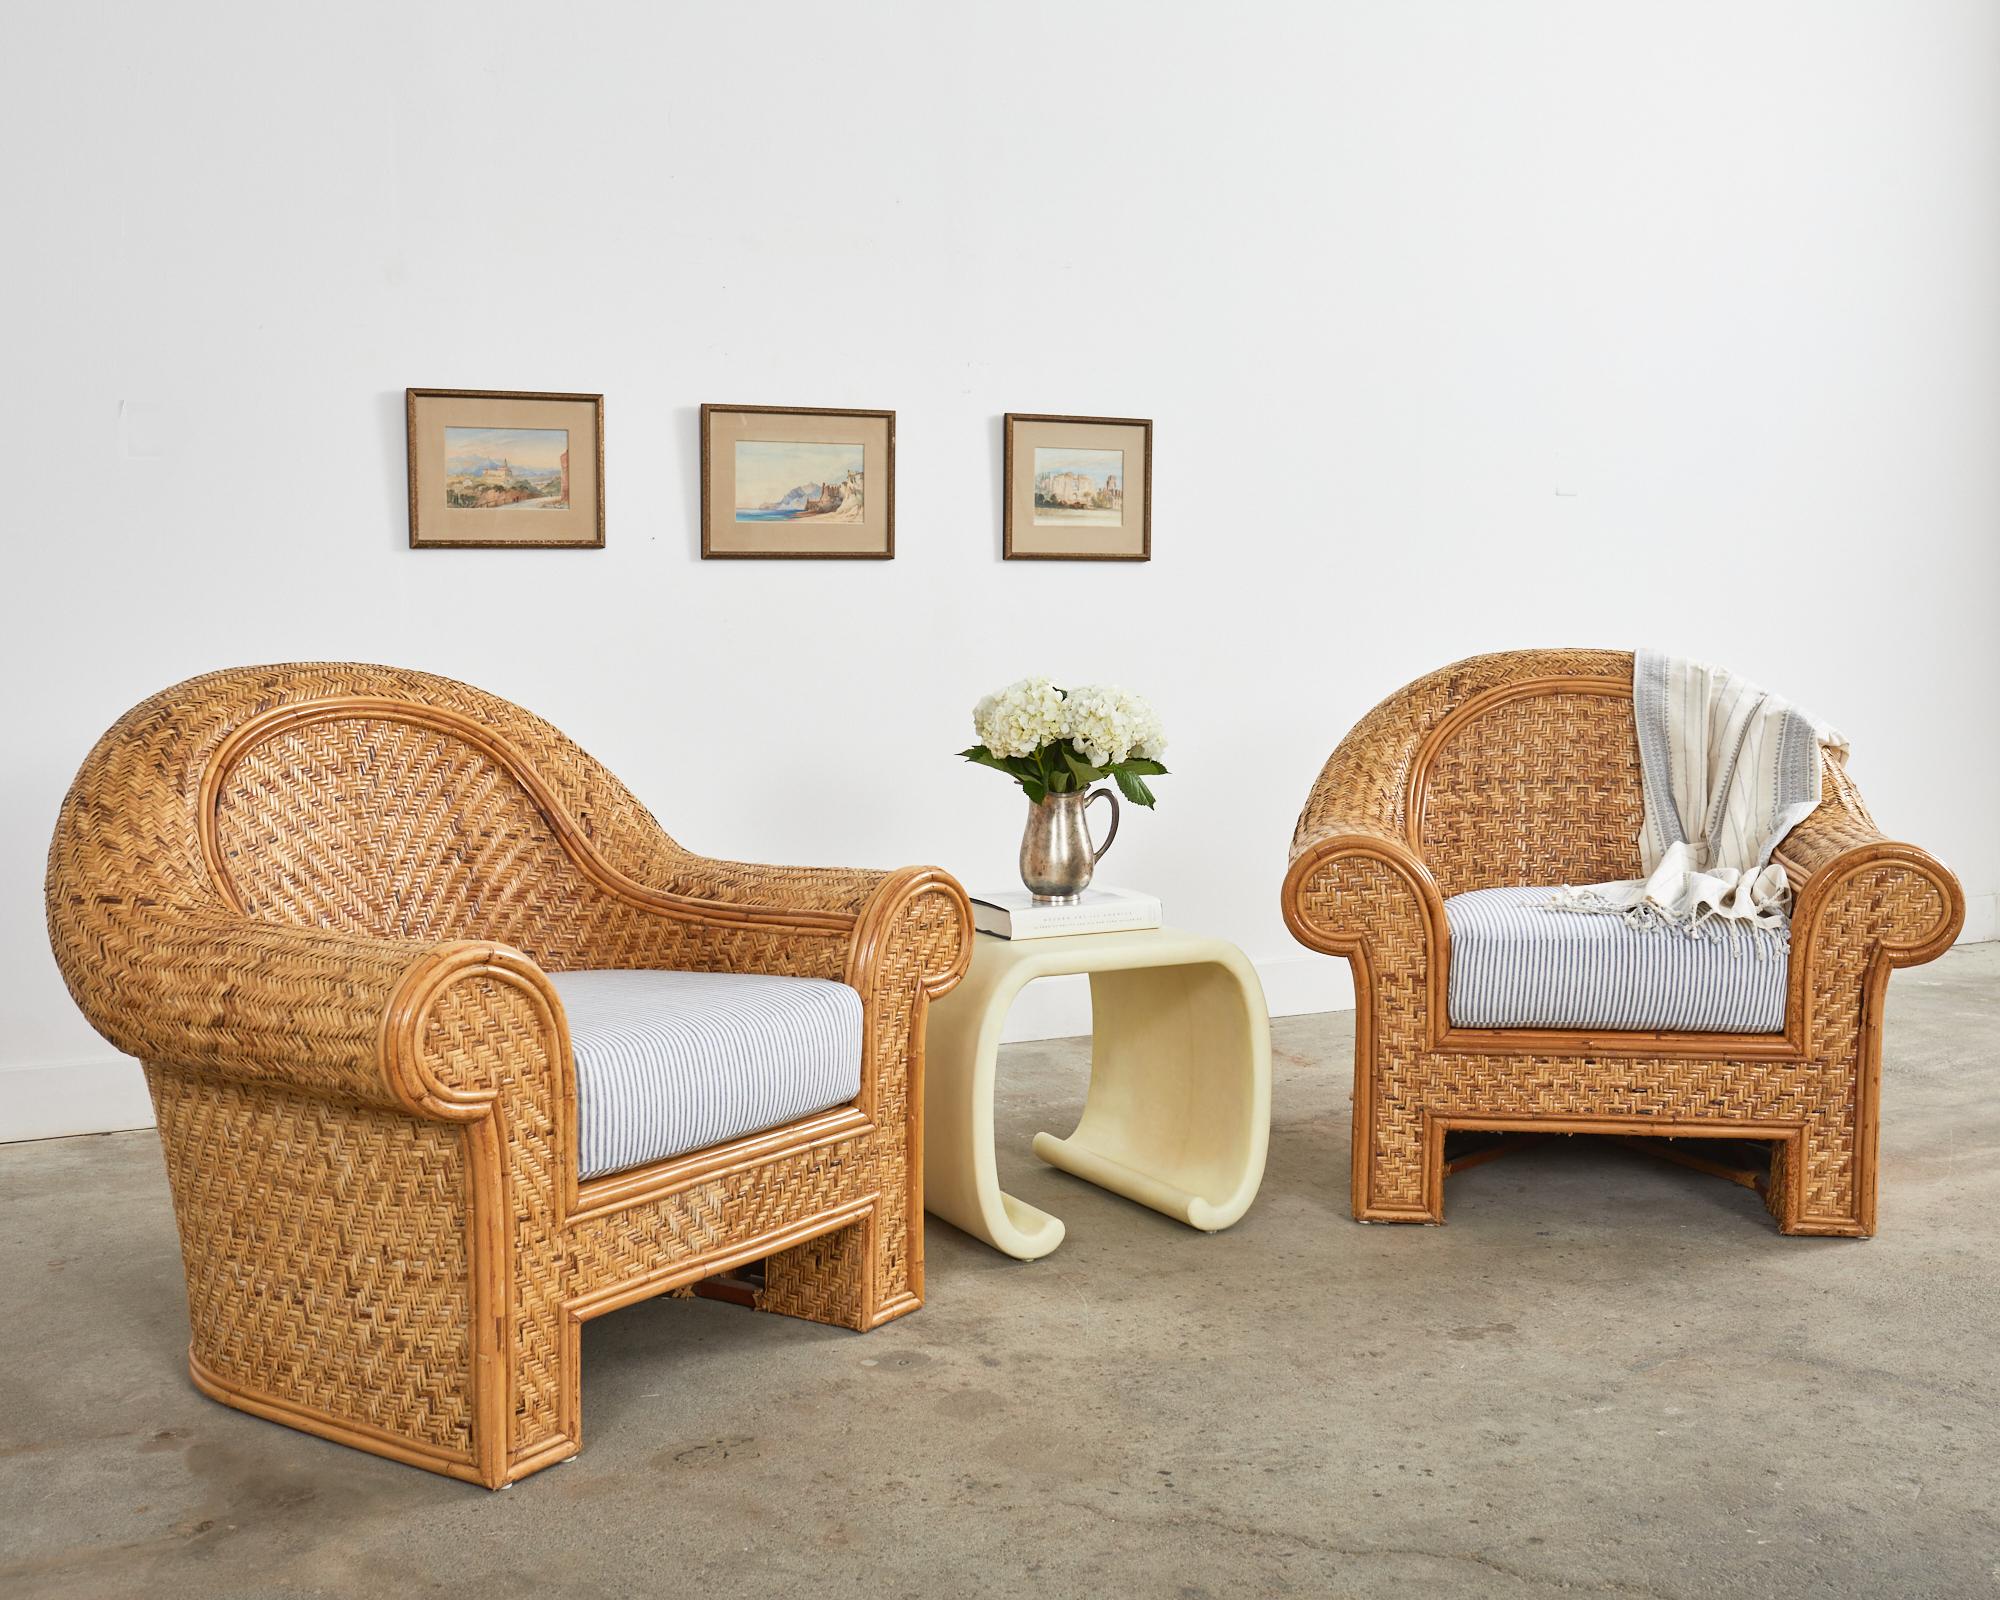 Magnifique paire de chaises de salon organiques modernes surdimensionnées avec un cadre recouvert de rotin tressé de style seagrass. Produit par O-Asian pour Ralph Lauren Home. Le grand cadre est construit à partir de poteaux de rotin et de bois et